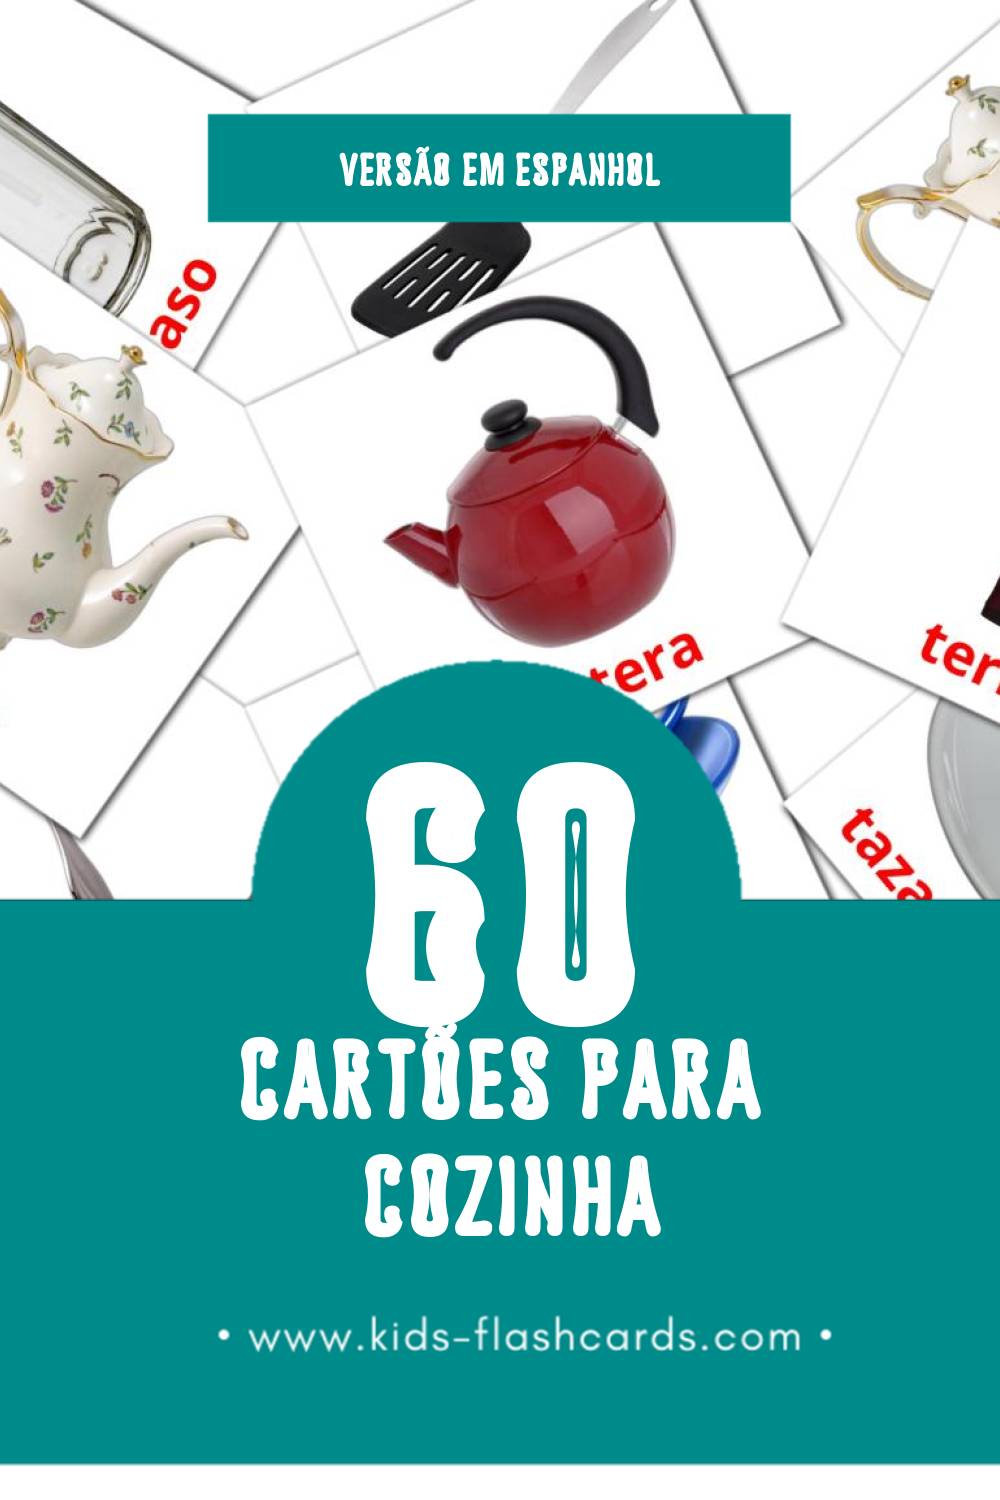 Flashcards de Cocina Visuais para Toddlers (60 cartões em Espanhol)